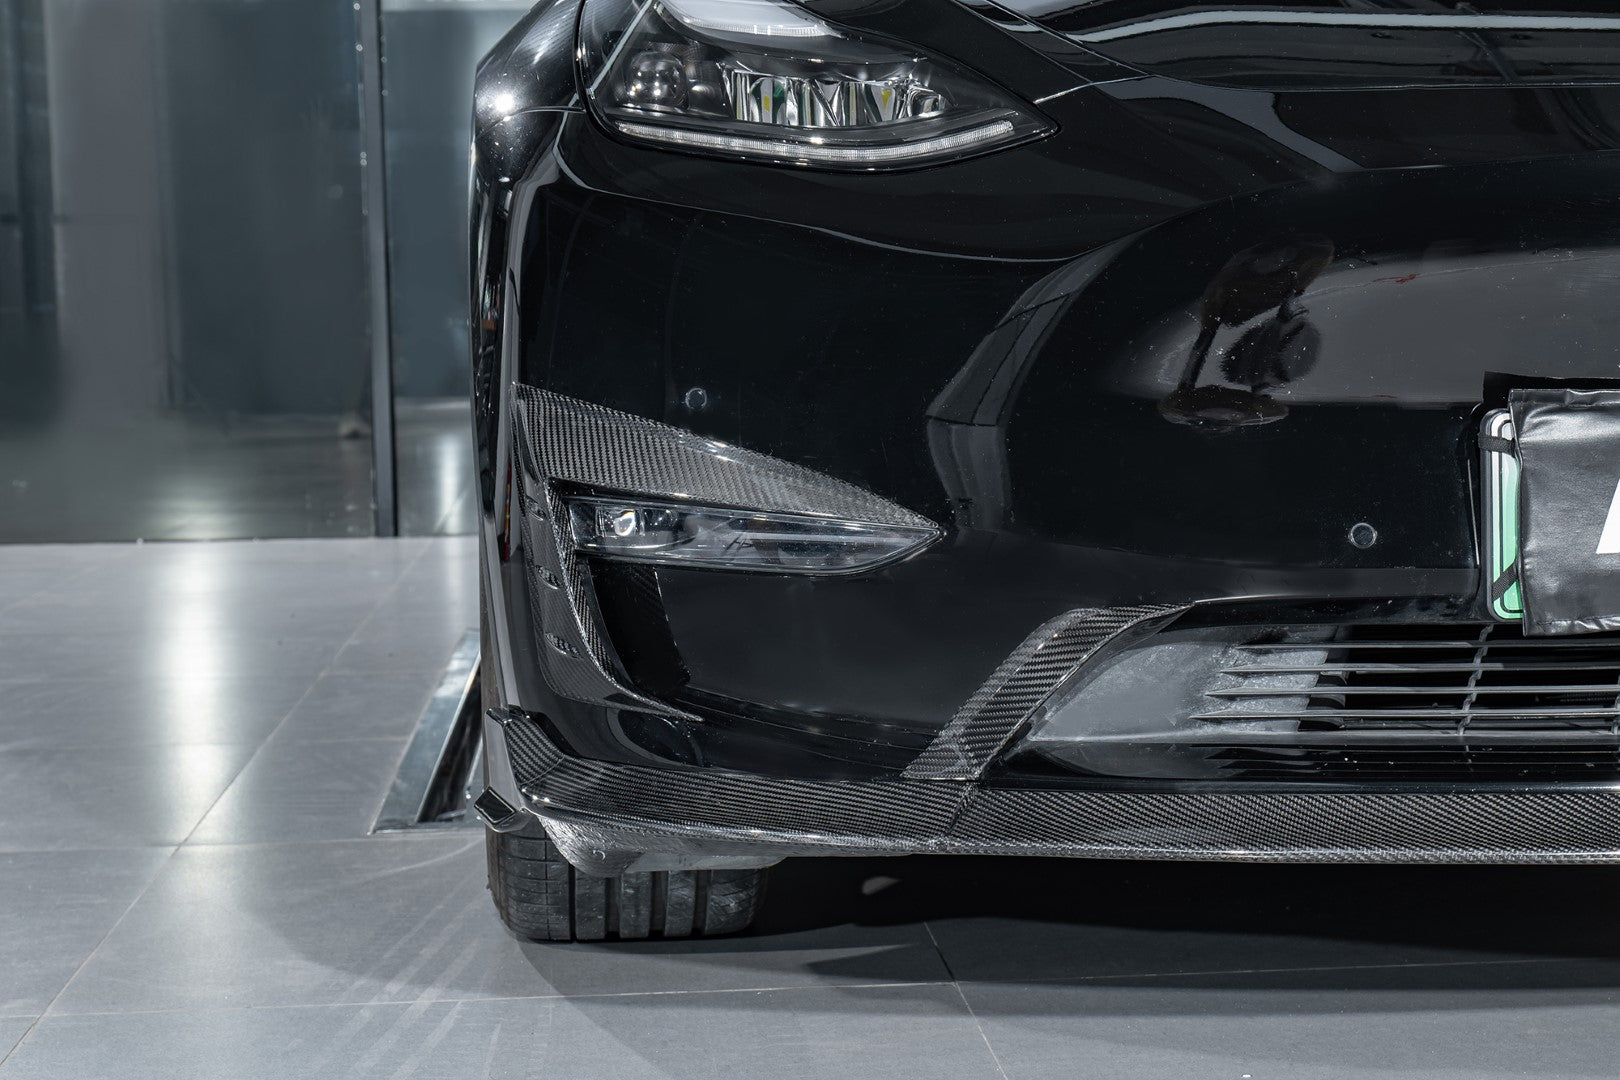 Karbel Carbon Pre-preg Carbon Fiber Front Lip Splitter for Tesla Model Y / Performance